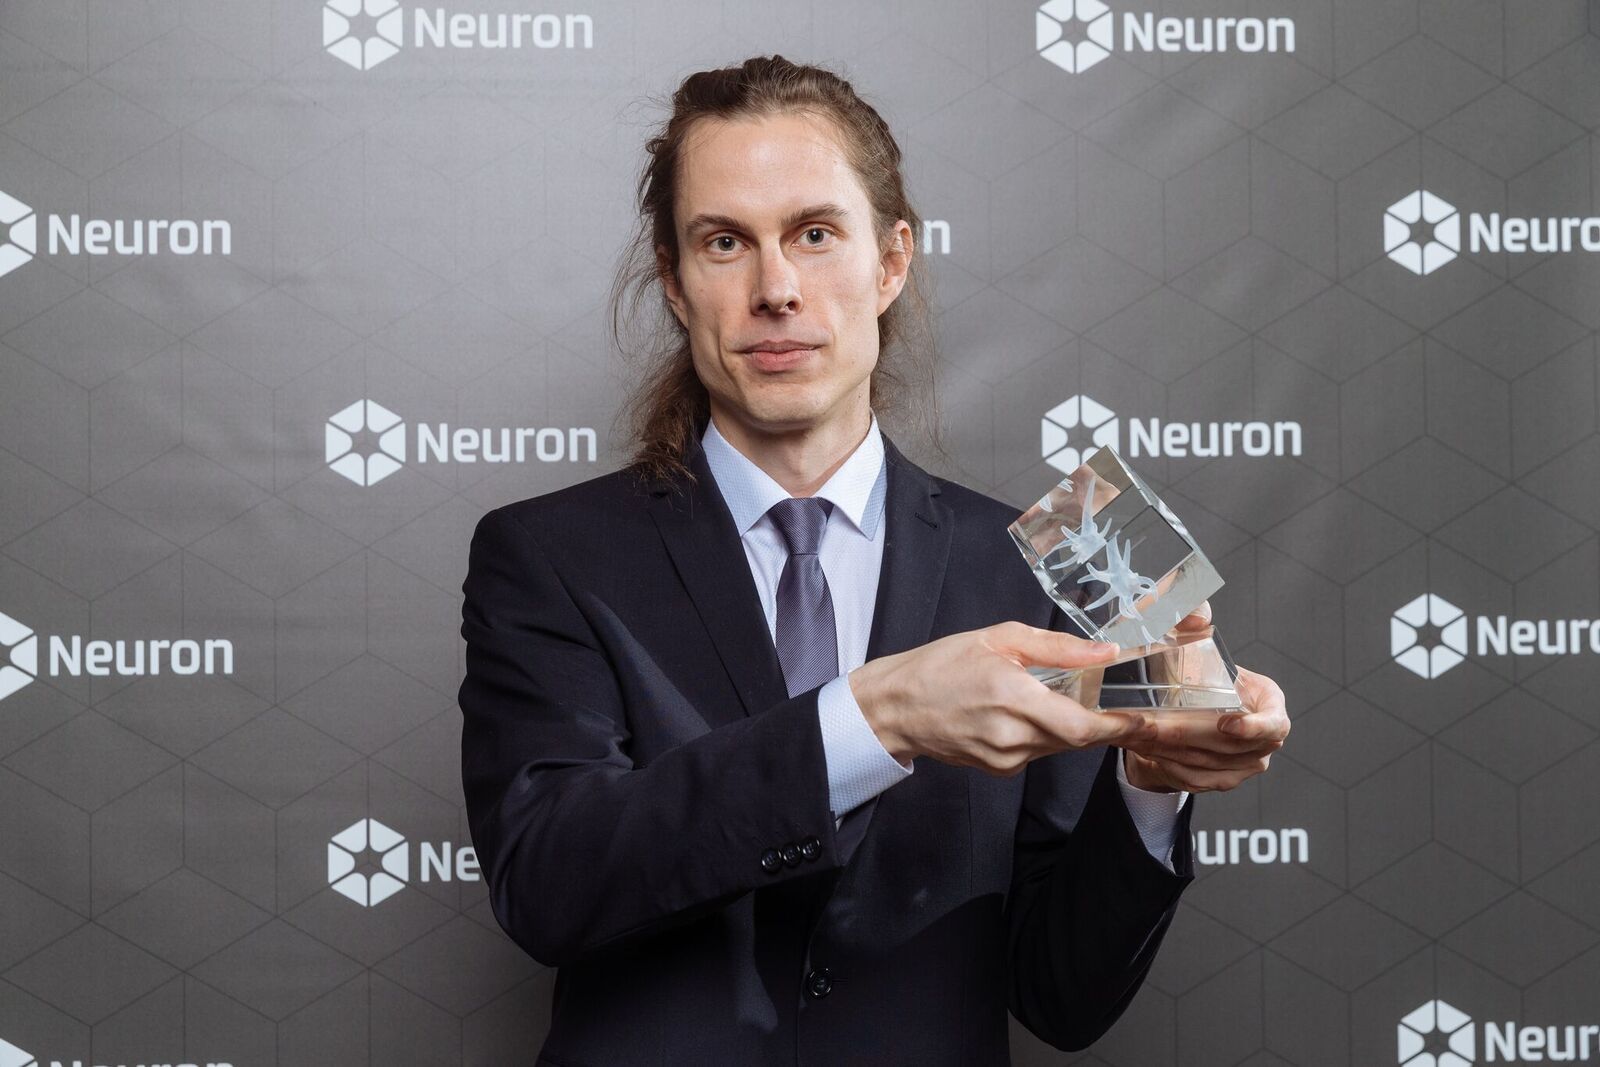 Ceny Neuron 2018 - počítačový vědec Tomáš Mikolov